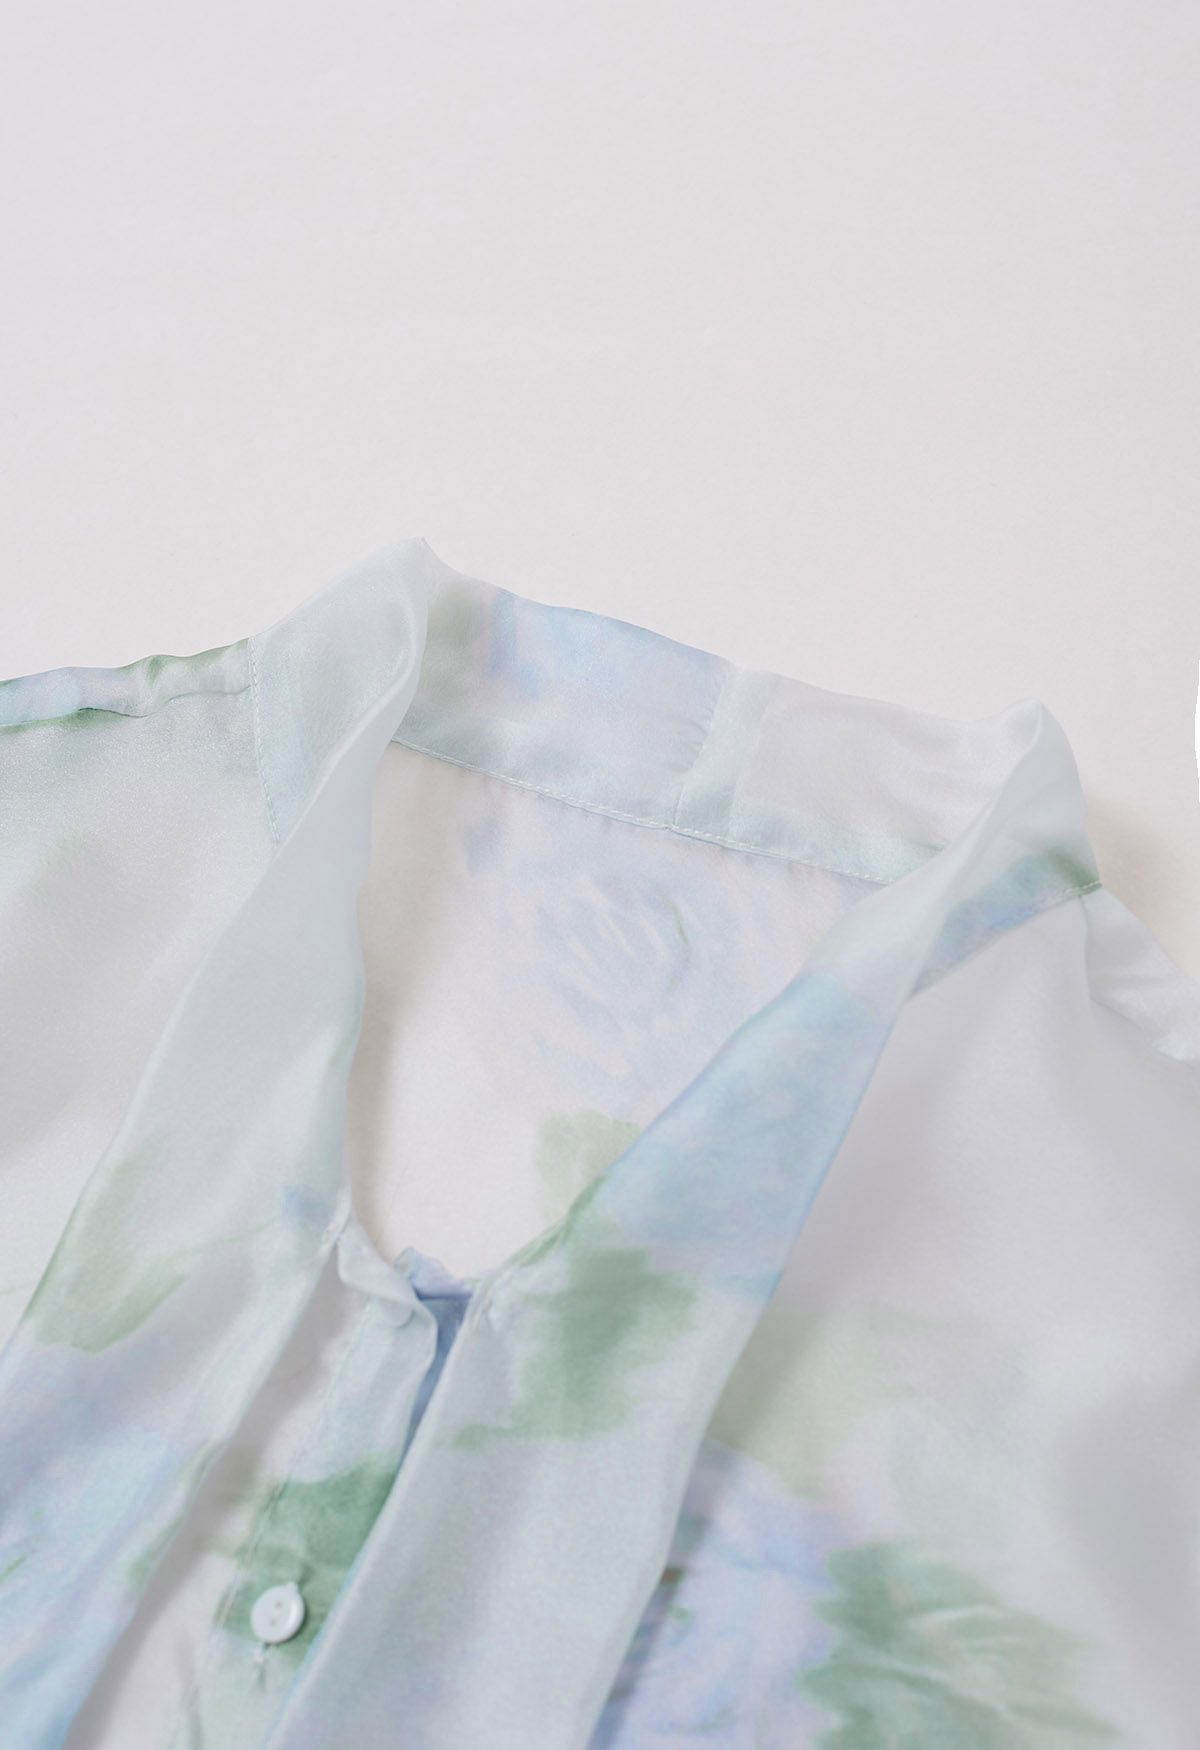 Fascinante camisa transparente con lazo floral de acuarela en azul